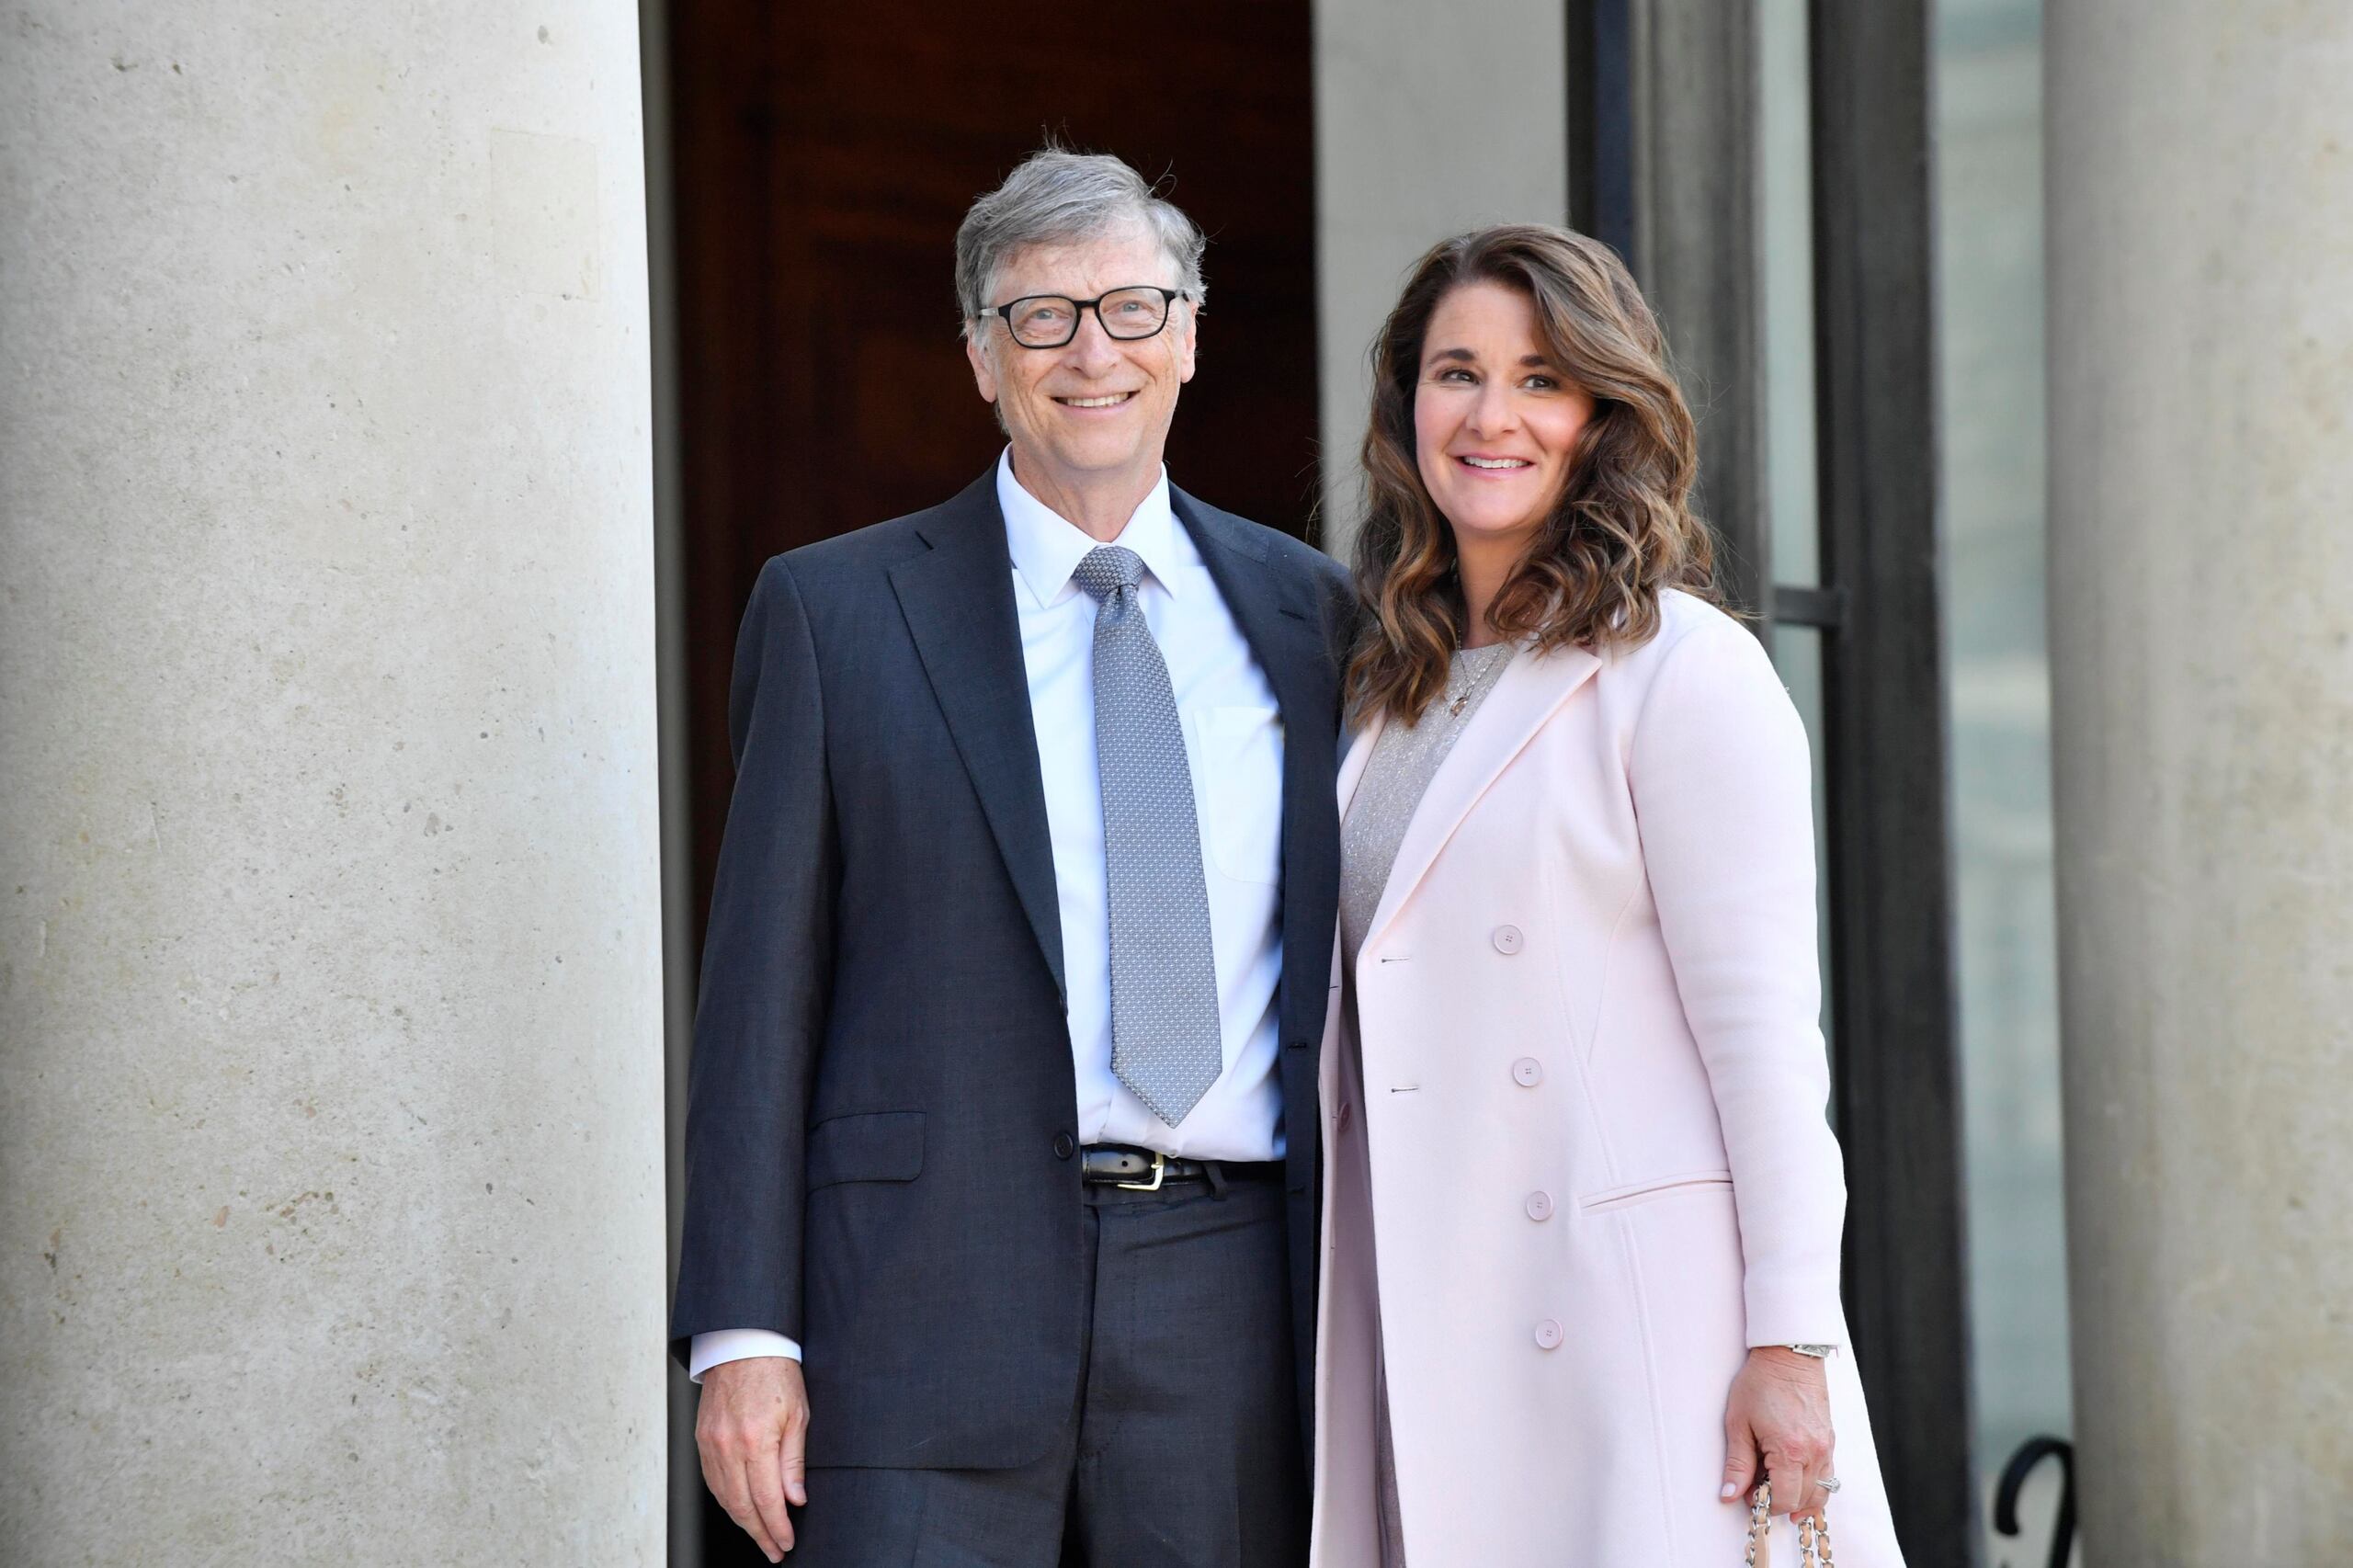 Según explicó, ha realizado un “viaje de curación” tras el doloroso y publicitado divorcio del cofundador de Microsoft, Bill Gates, con quien estuvo casada 27 años antes de anunciar su separación el pasado mes de mayo.